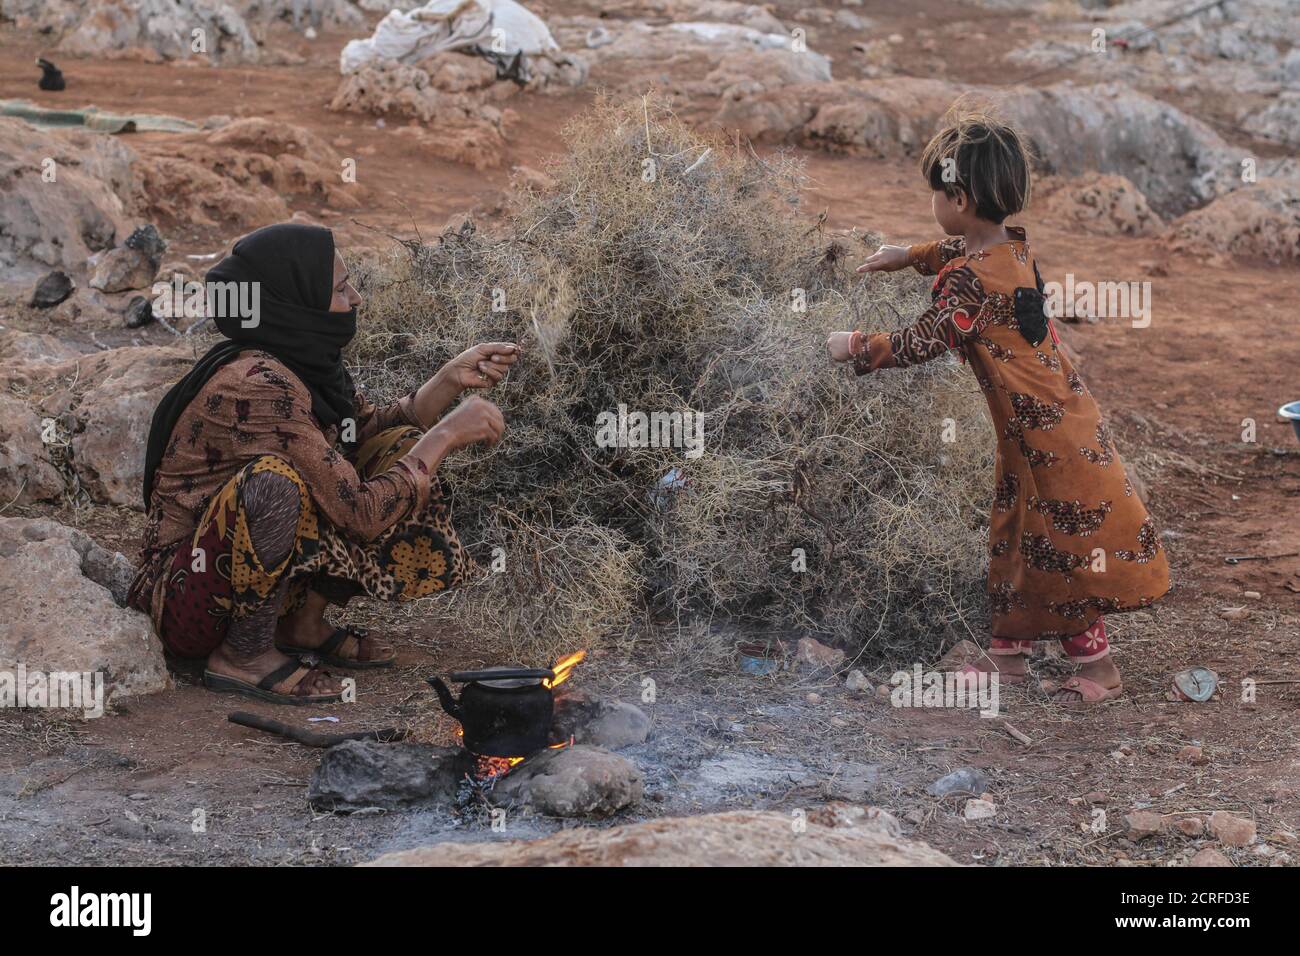 19 septembre 2020 : une femme prépare du thé sur bois de chauffage dans un camp dans le nord de la Syrie, et sa fille l'aide tout en cuisinant et en faisant bouillir le thé en raison du manque de gaz qu'elle a. Crédit : Moawia Atrash/ZUMA Wire/Alay Live News Banque D'Images